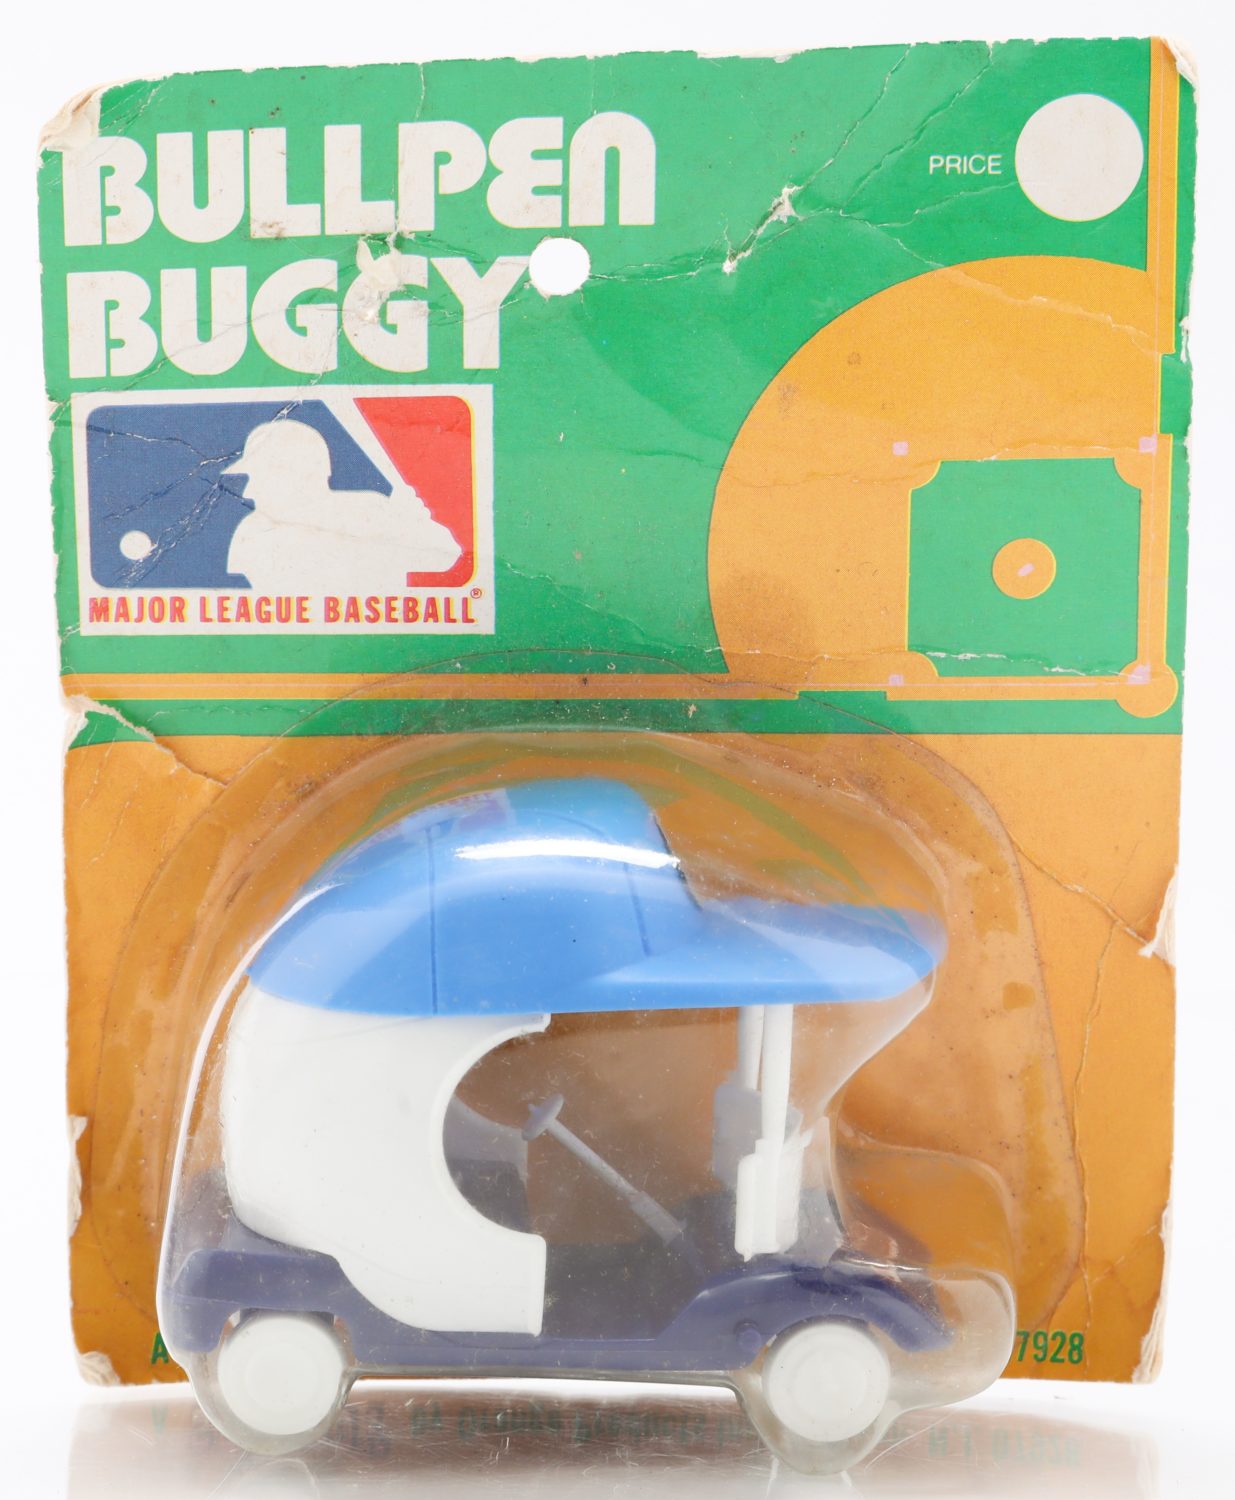 New York Mets Bullpen Buggy Toy Replica